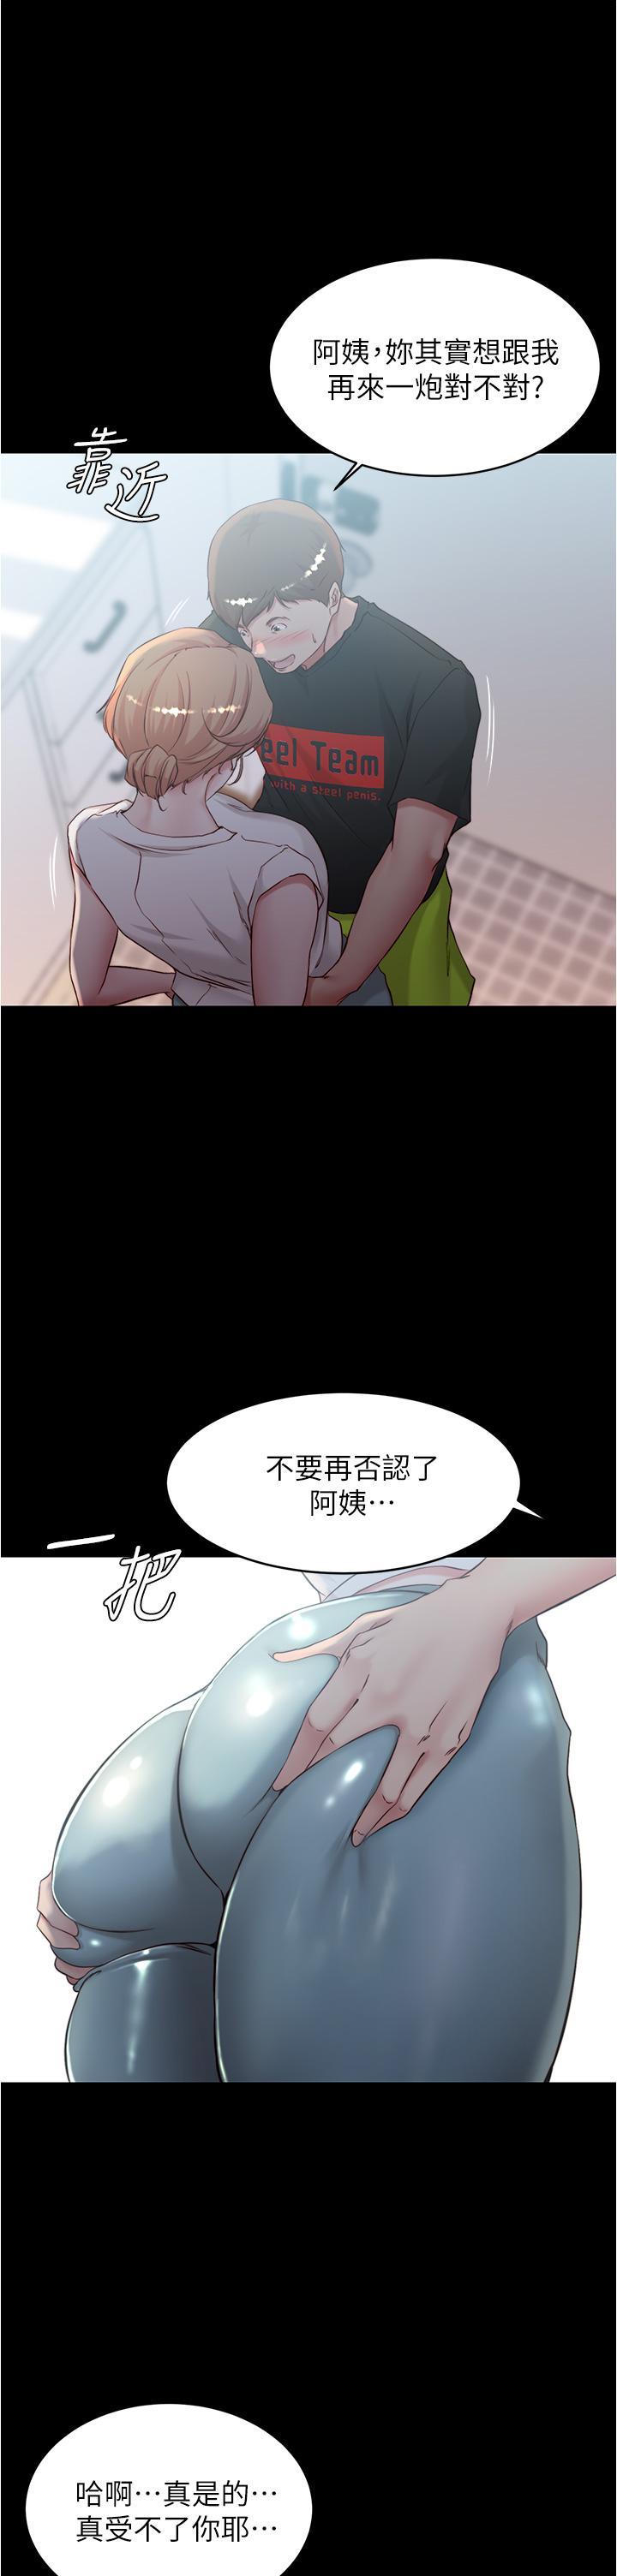 小褲褲筆記漫画 免费阅读 第37话-开始跟张惠桦同居 1.jpg